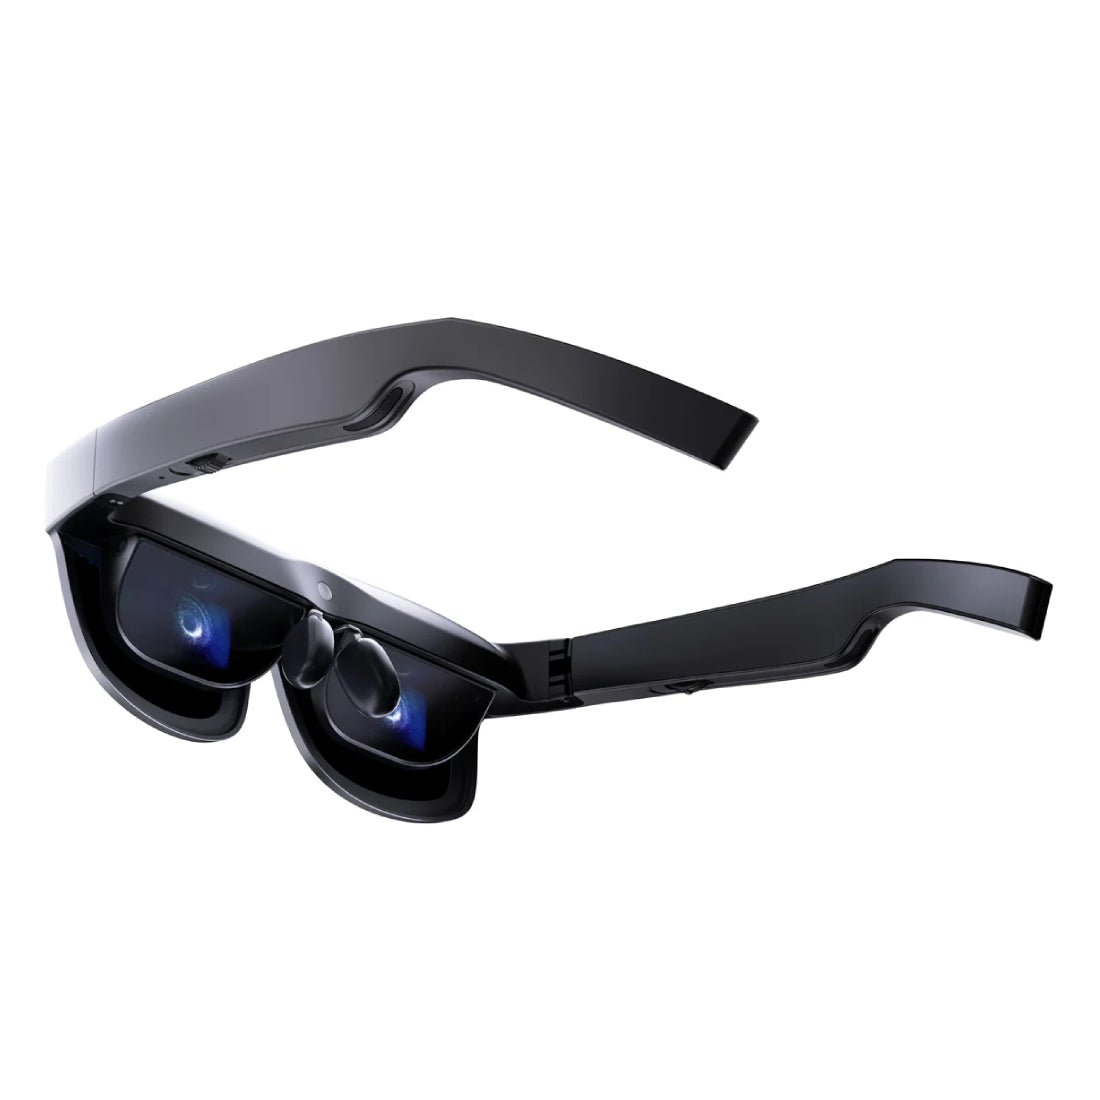 TCL NXTWEAR S+ Smart Glasses - نظارة ذكية - Store 974 | ستور ٩٧٤